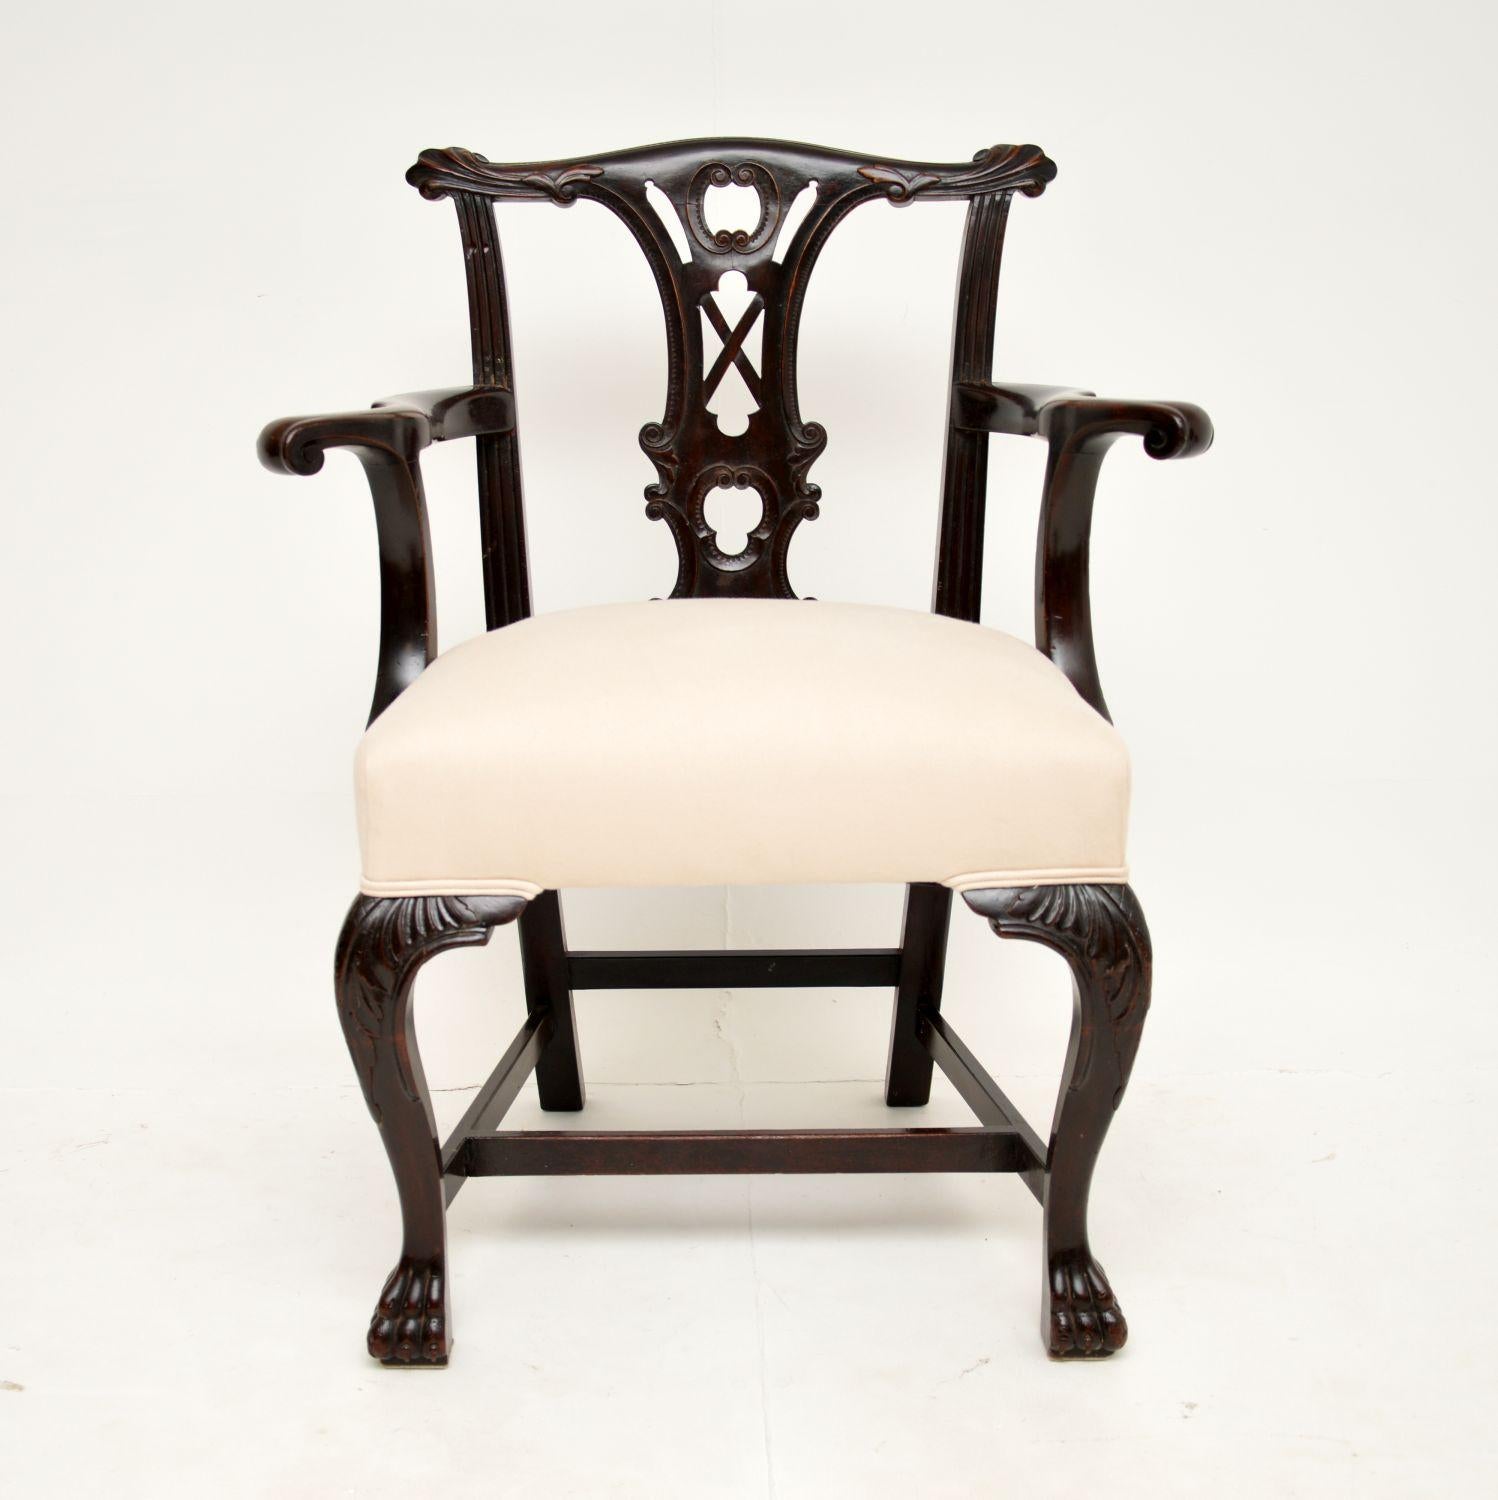 Excellent fauteuil d'époque géorgienne dans le style Chippendale. Ce très bel exemplaire a été fabriqué en Angleterre et date des années 1760-80.

Il est d'une qualité absolument fabuleuse, avec un cadre très audacieux et magnifiquement sculpté. Il